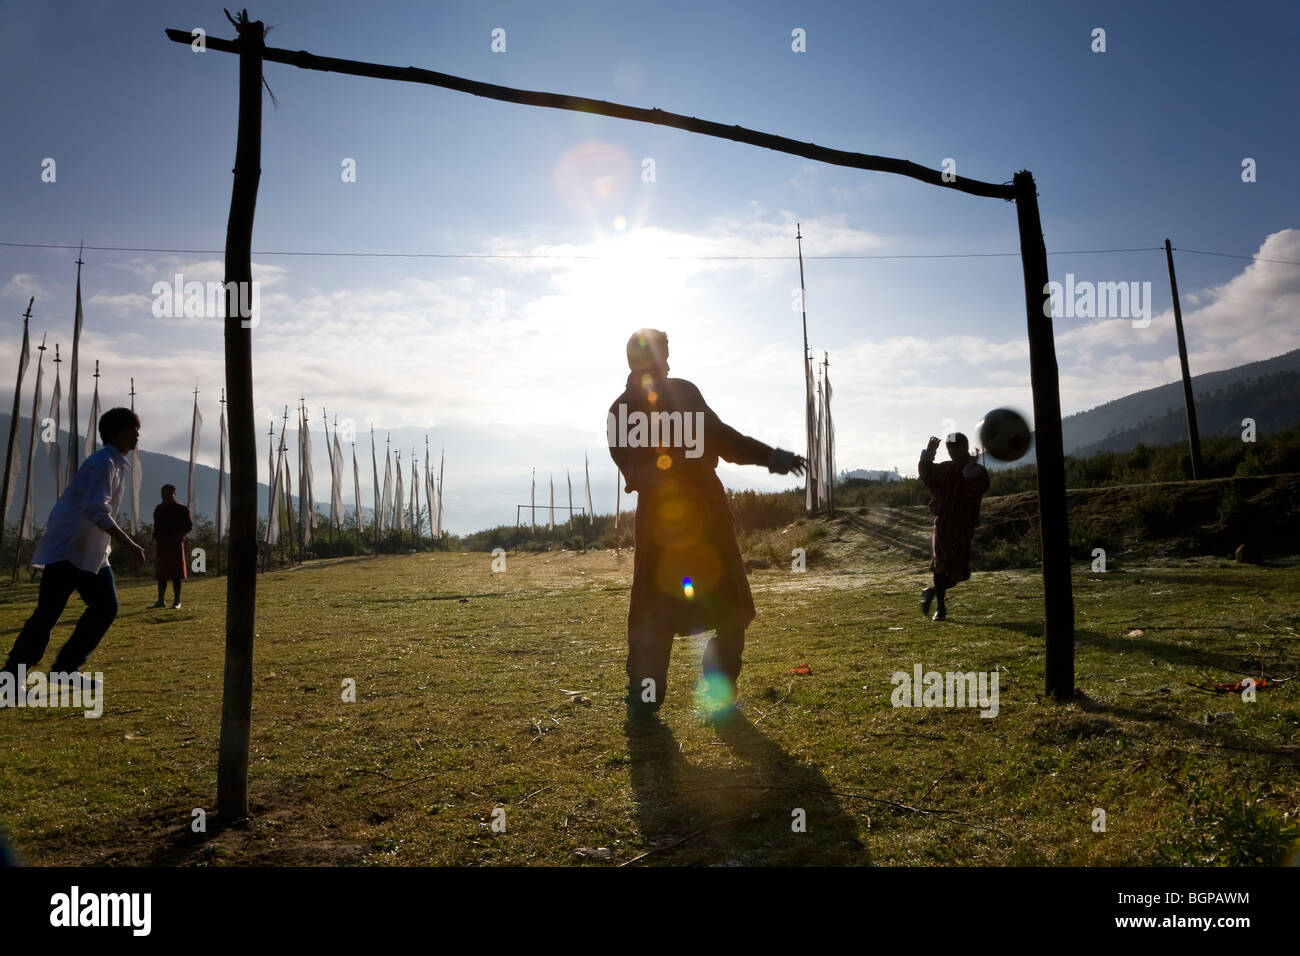 Les garçons jouent au football, Paro, Bhoutan Banque D'Images